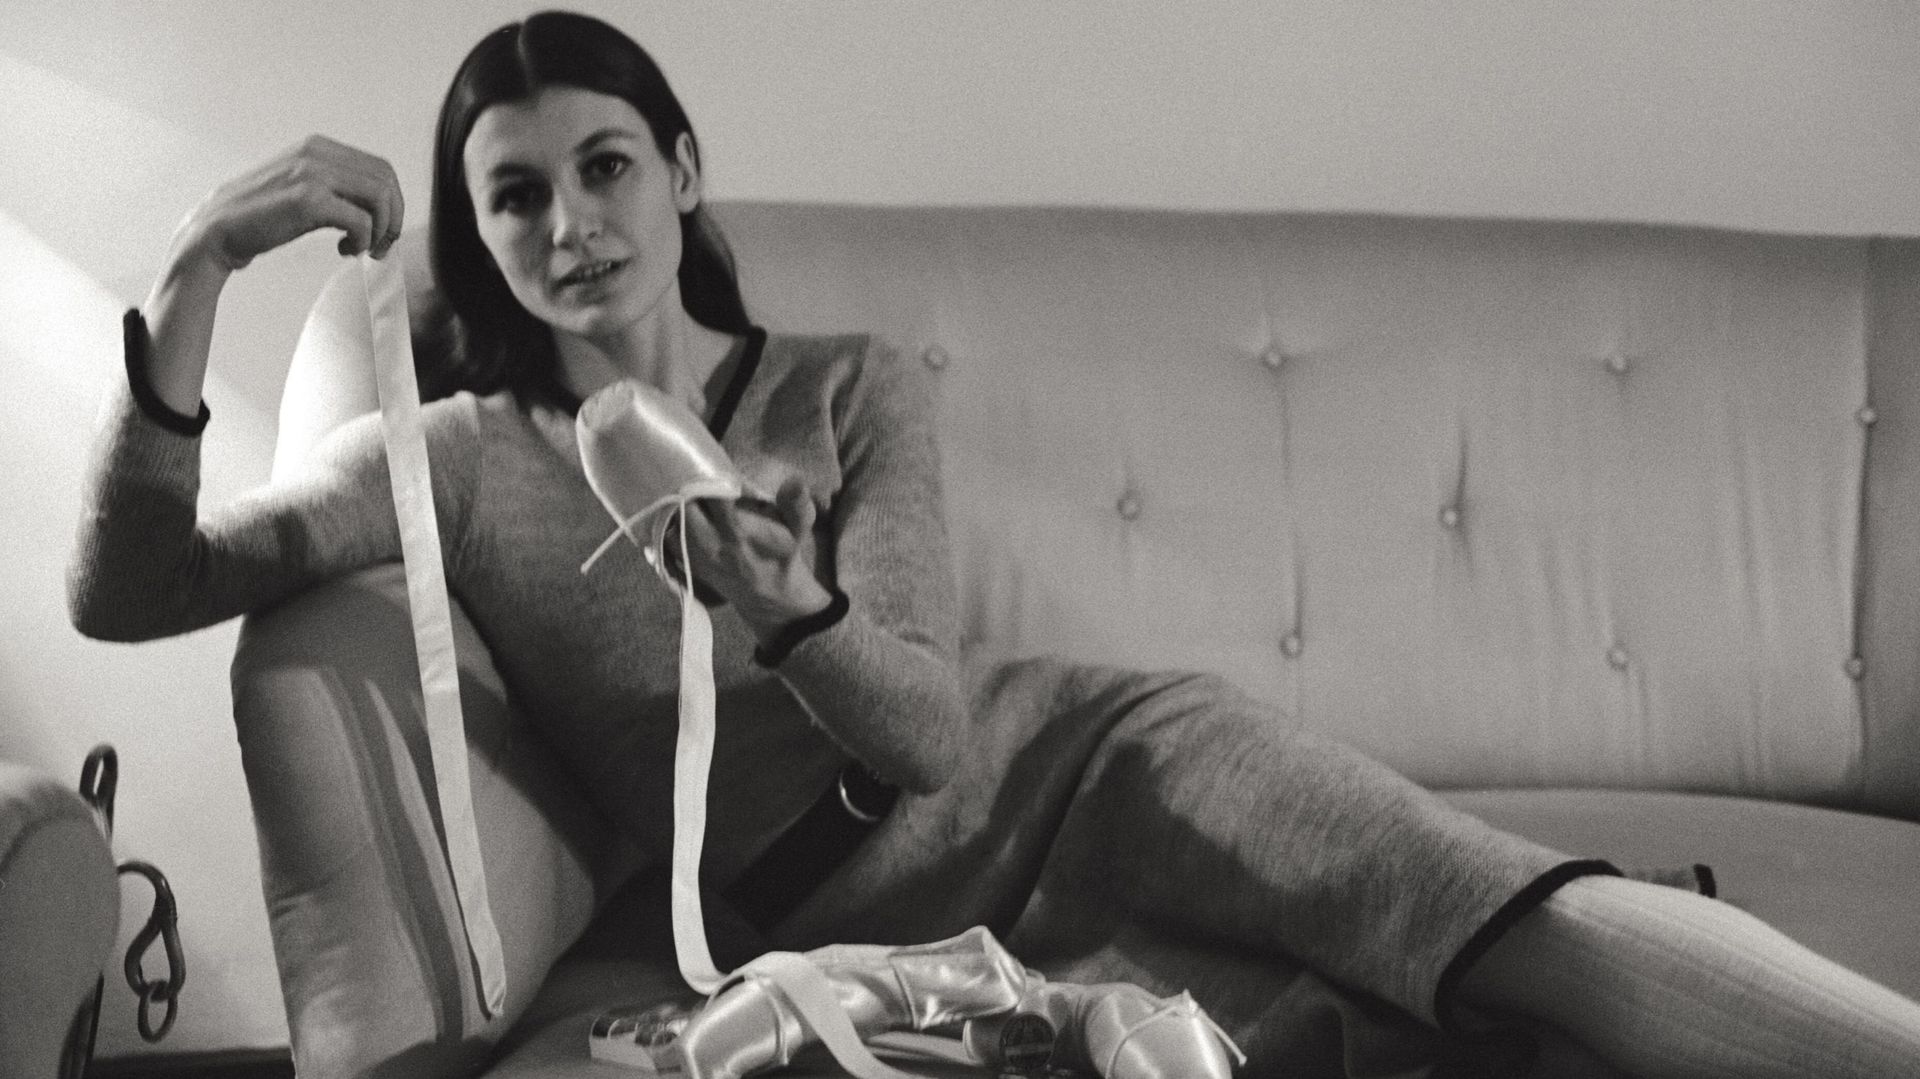 Portrait de la danseuse de ballet Carla Fracci, interviewée dans sa maison alors qu’elle coud, appliquant des rubans de soie sur ses chaussons de danse. Milan, février 1969.